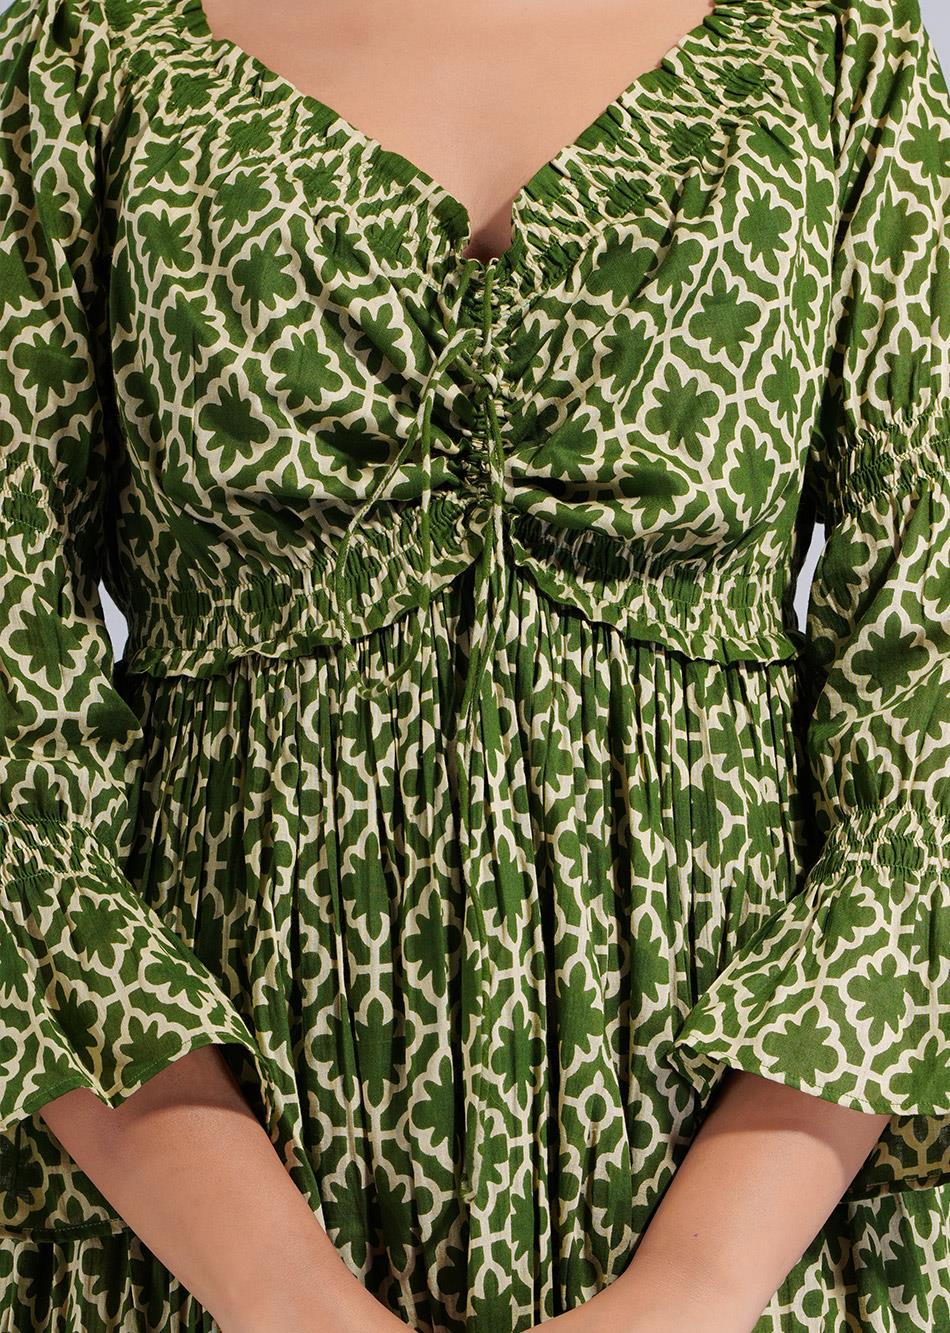 Green Printed Off -Shoulder Dress